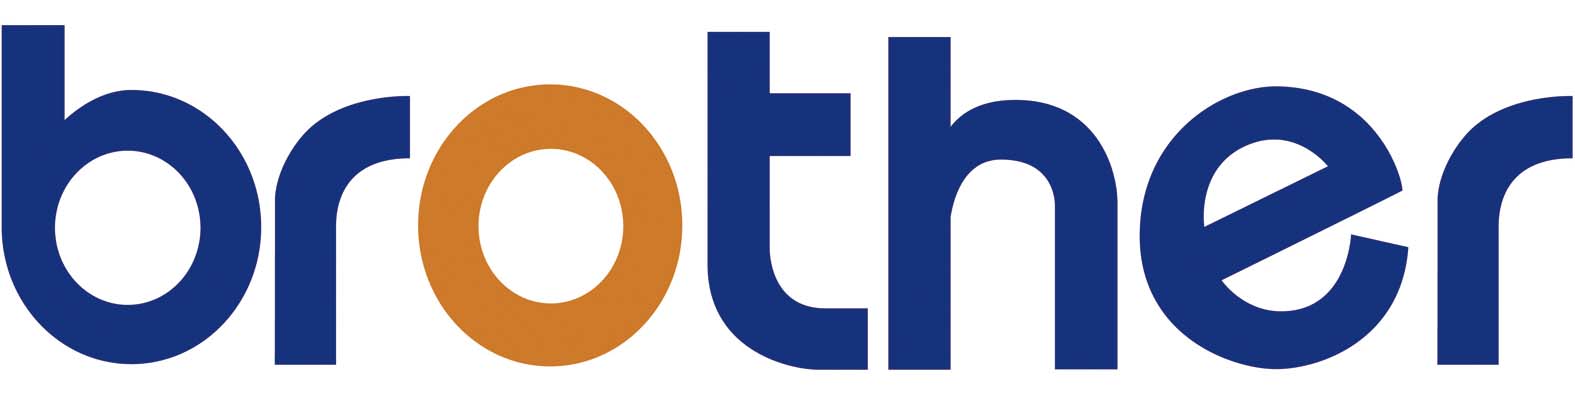 兄弟科技股份有限公司logo